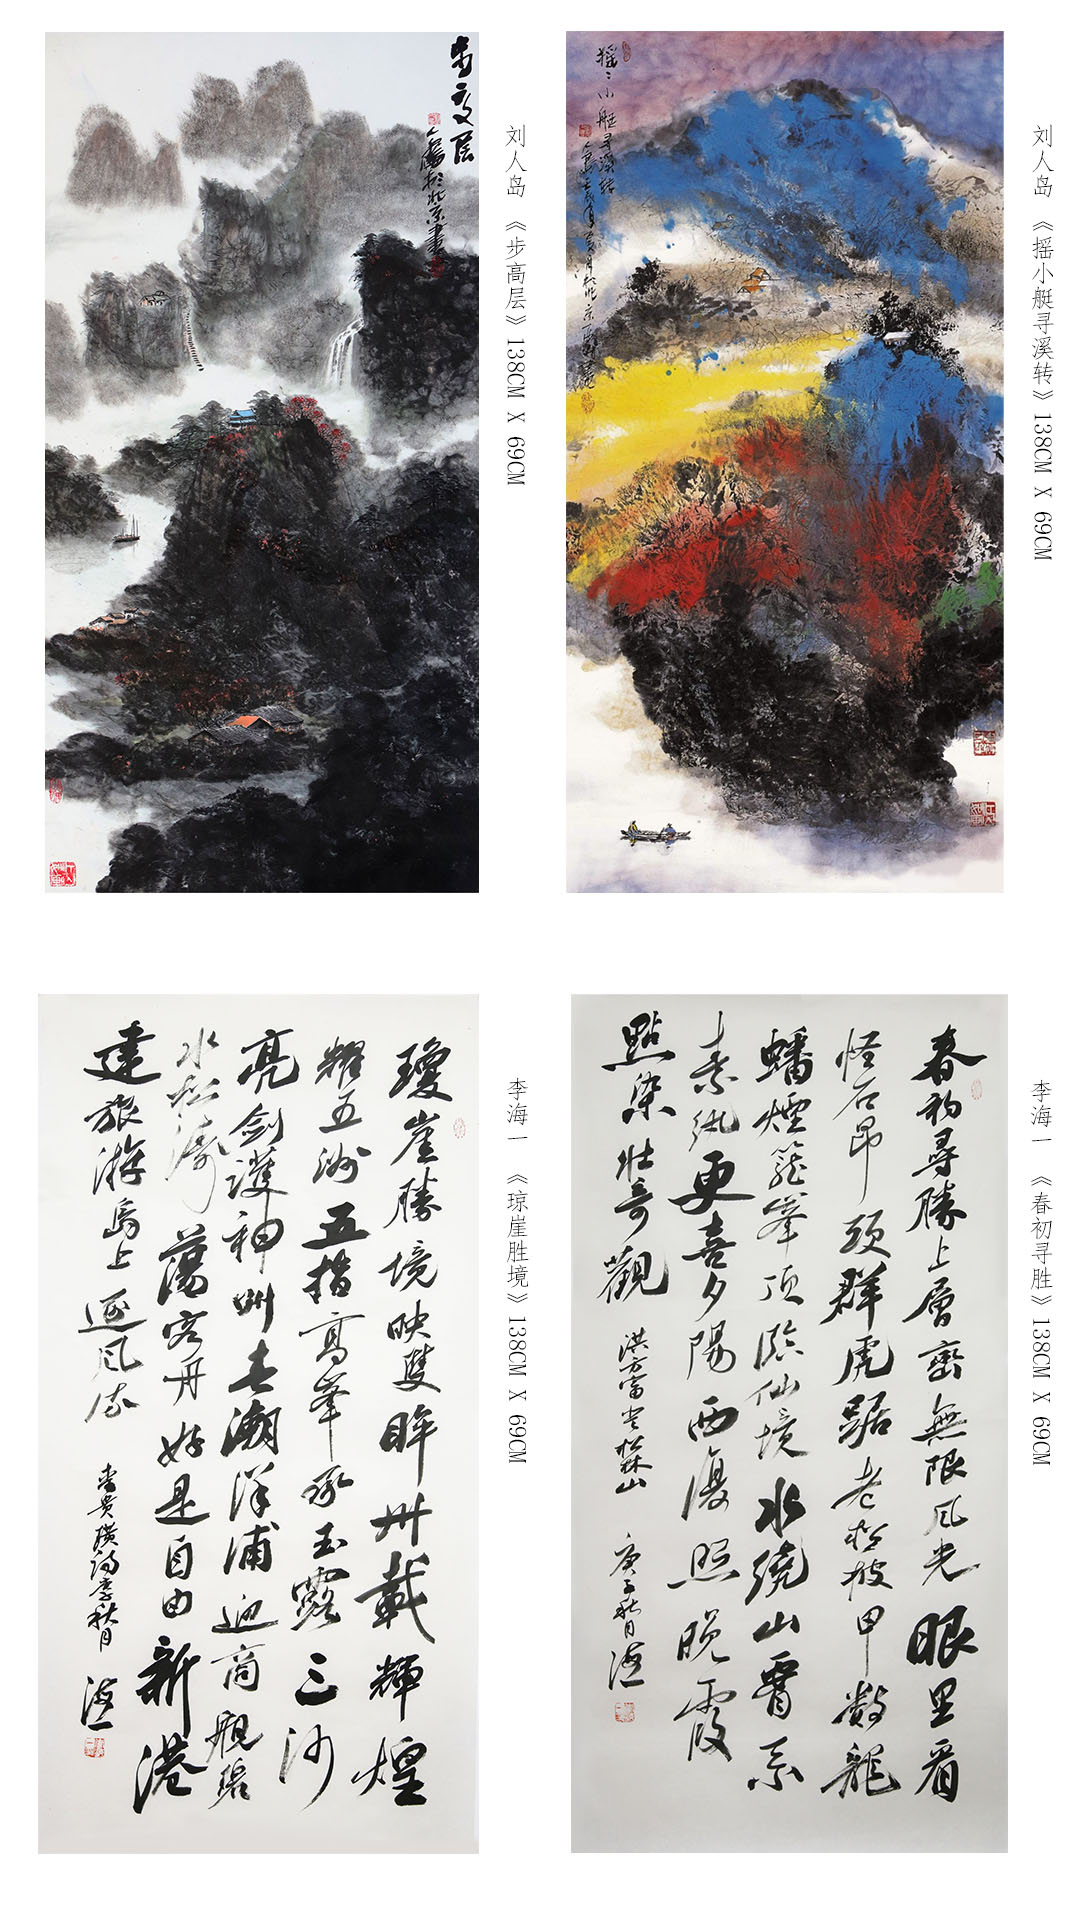 “以美扶志.山乡巨变”石墨烯书法美术作品展在北京精彩亮相